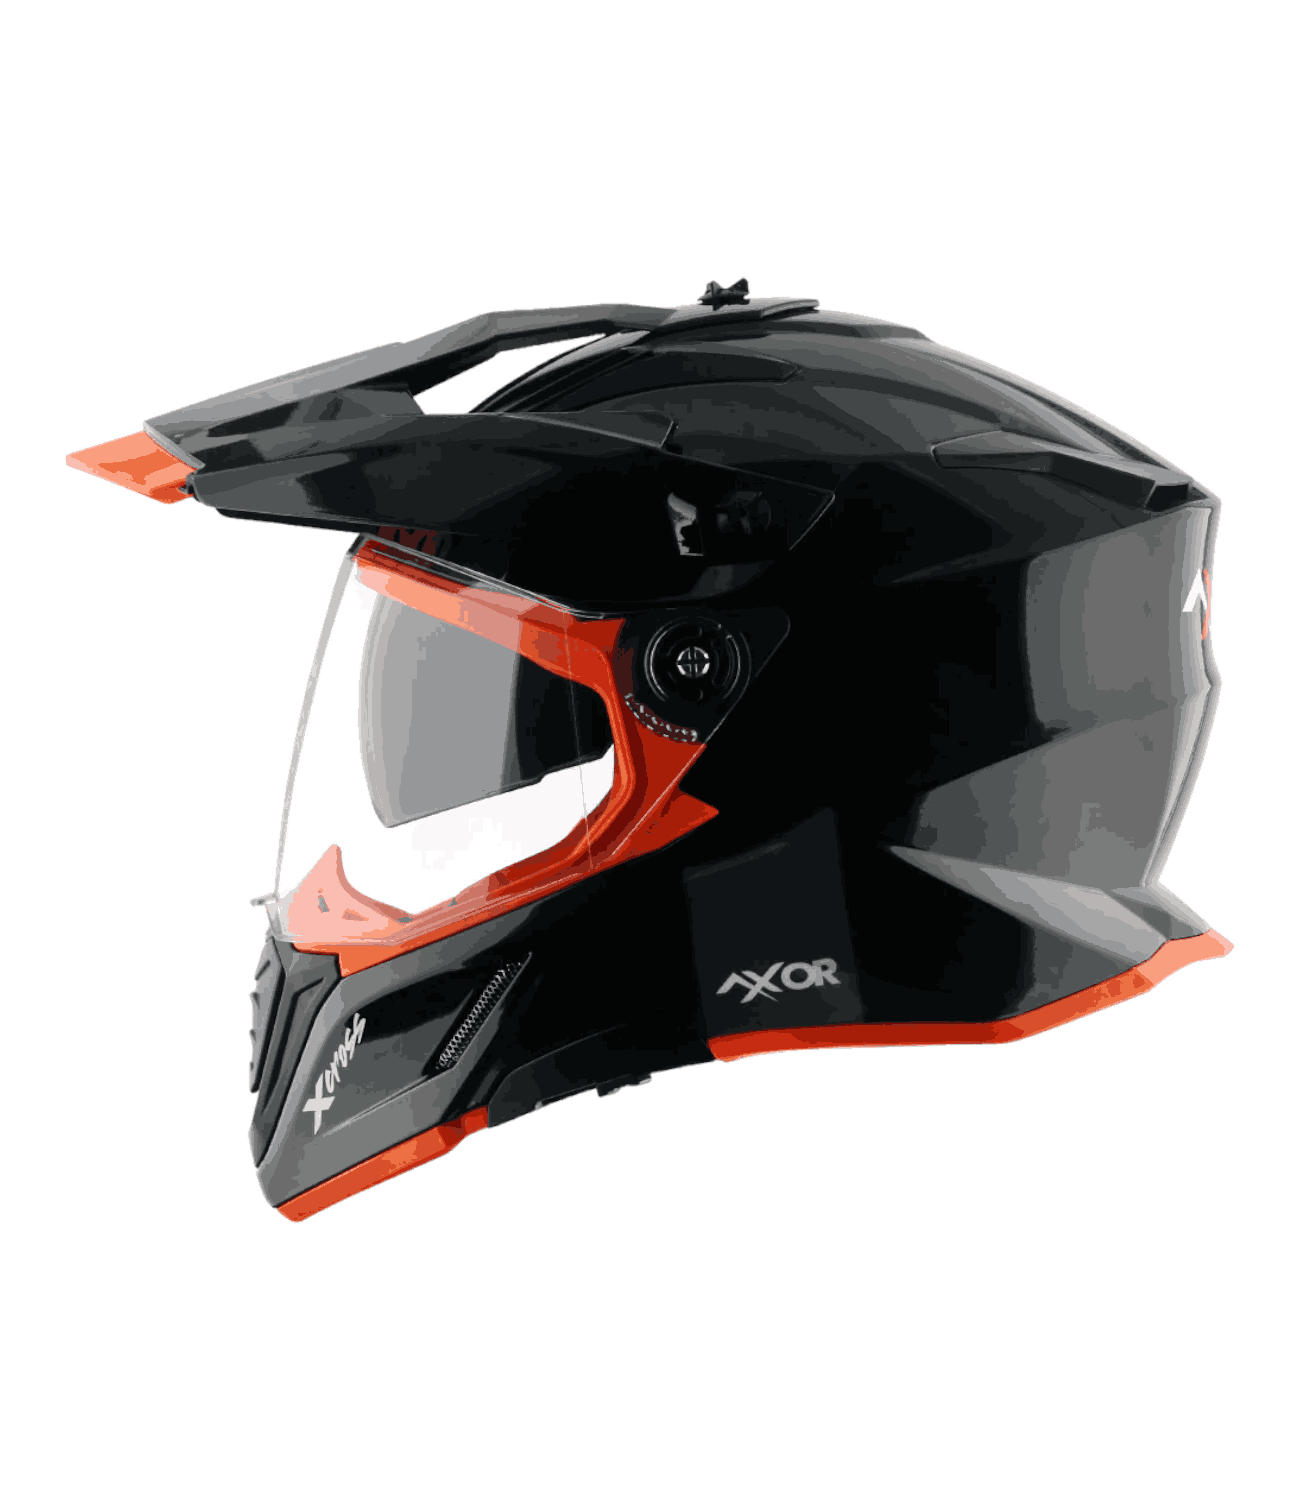 Axor X-Cross Dual Visor Helmet Black Orange